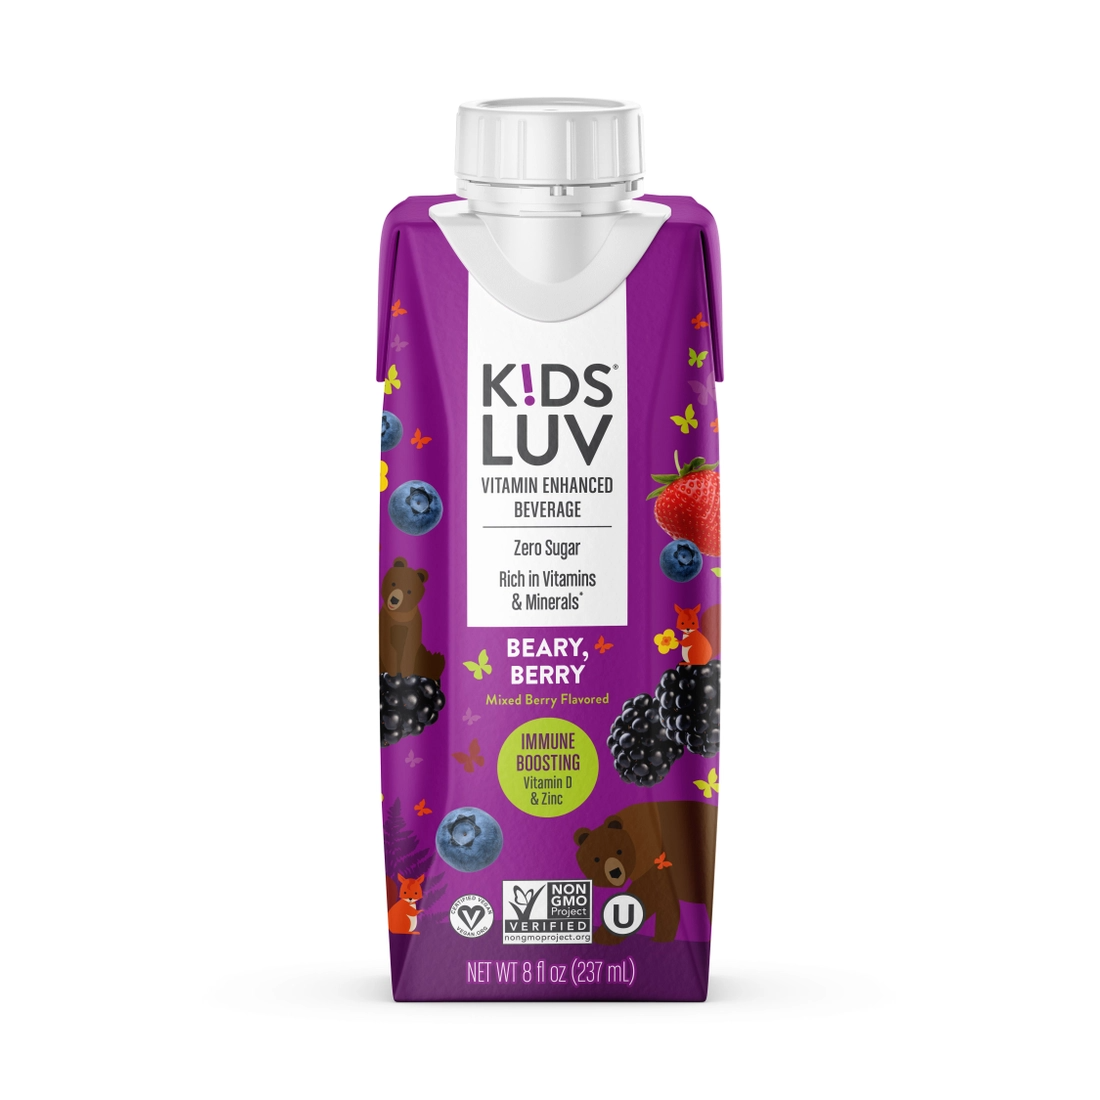 KidsLuv Beary, Berry 4 innerpacks per case 8.0 fl